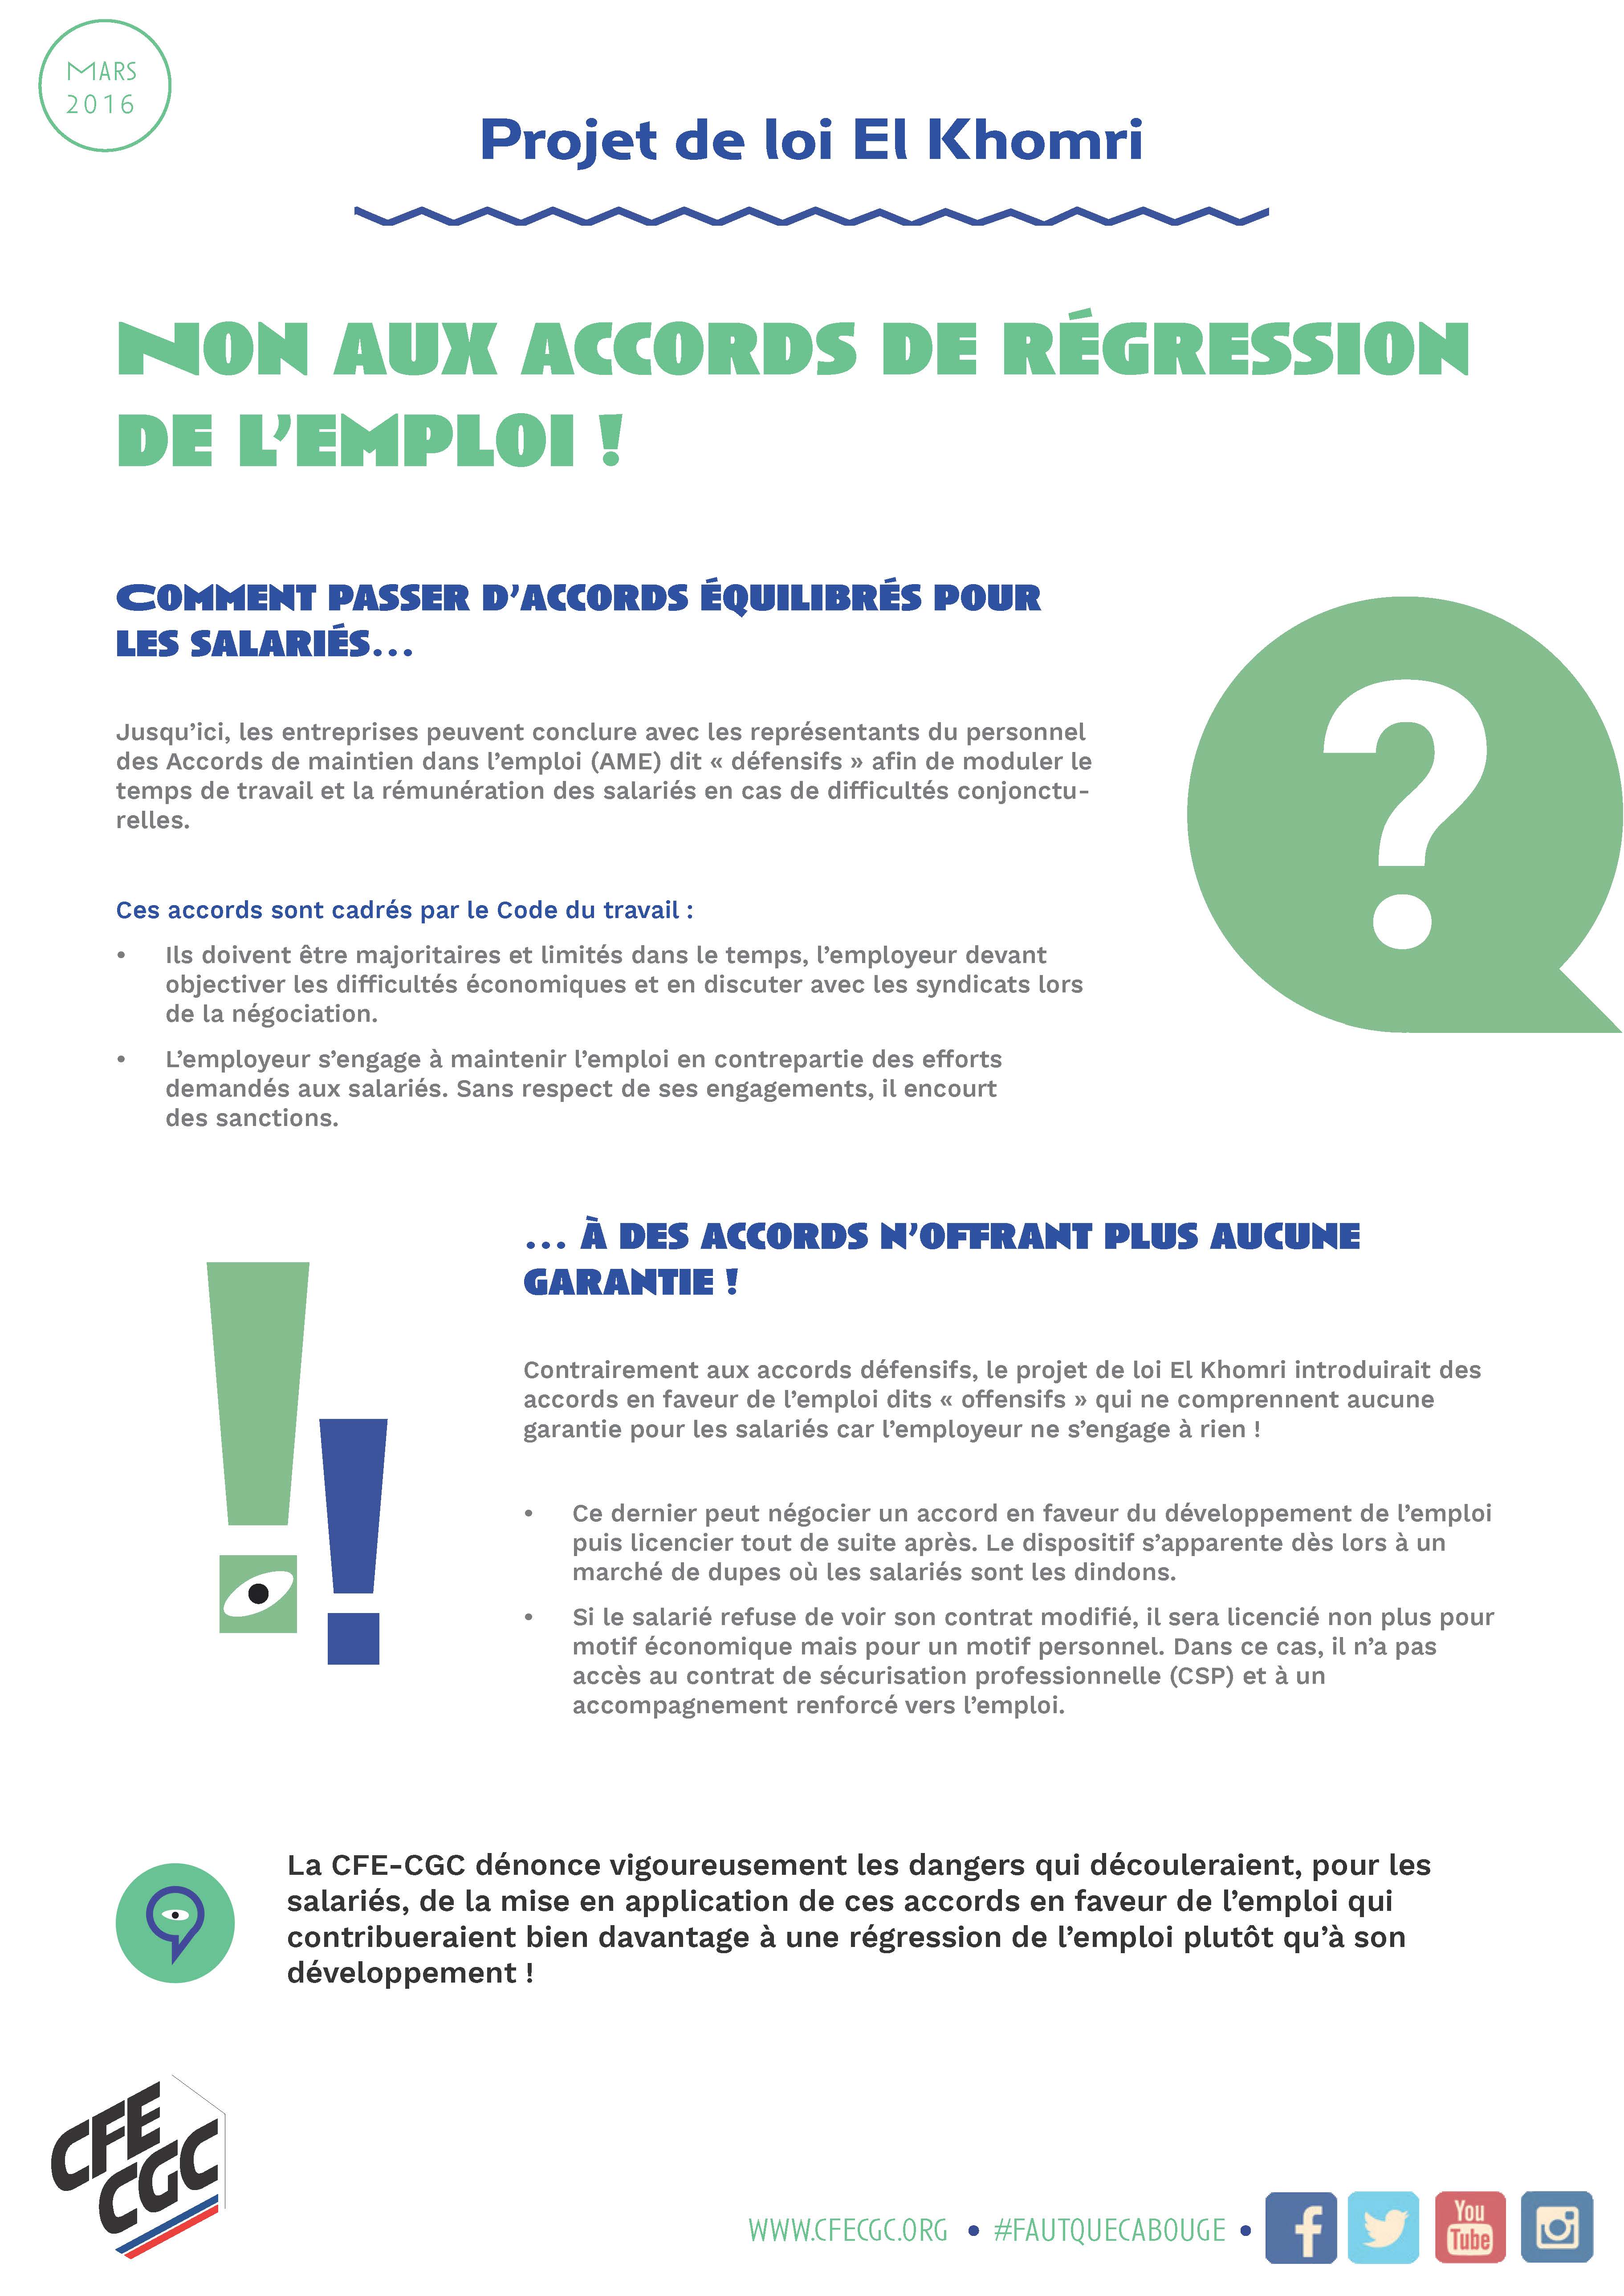 5. TRACT - NON AUX ACCORDS DE REGRESSION DE L'EMPLOI